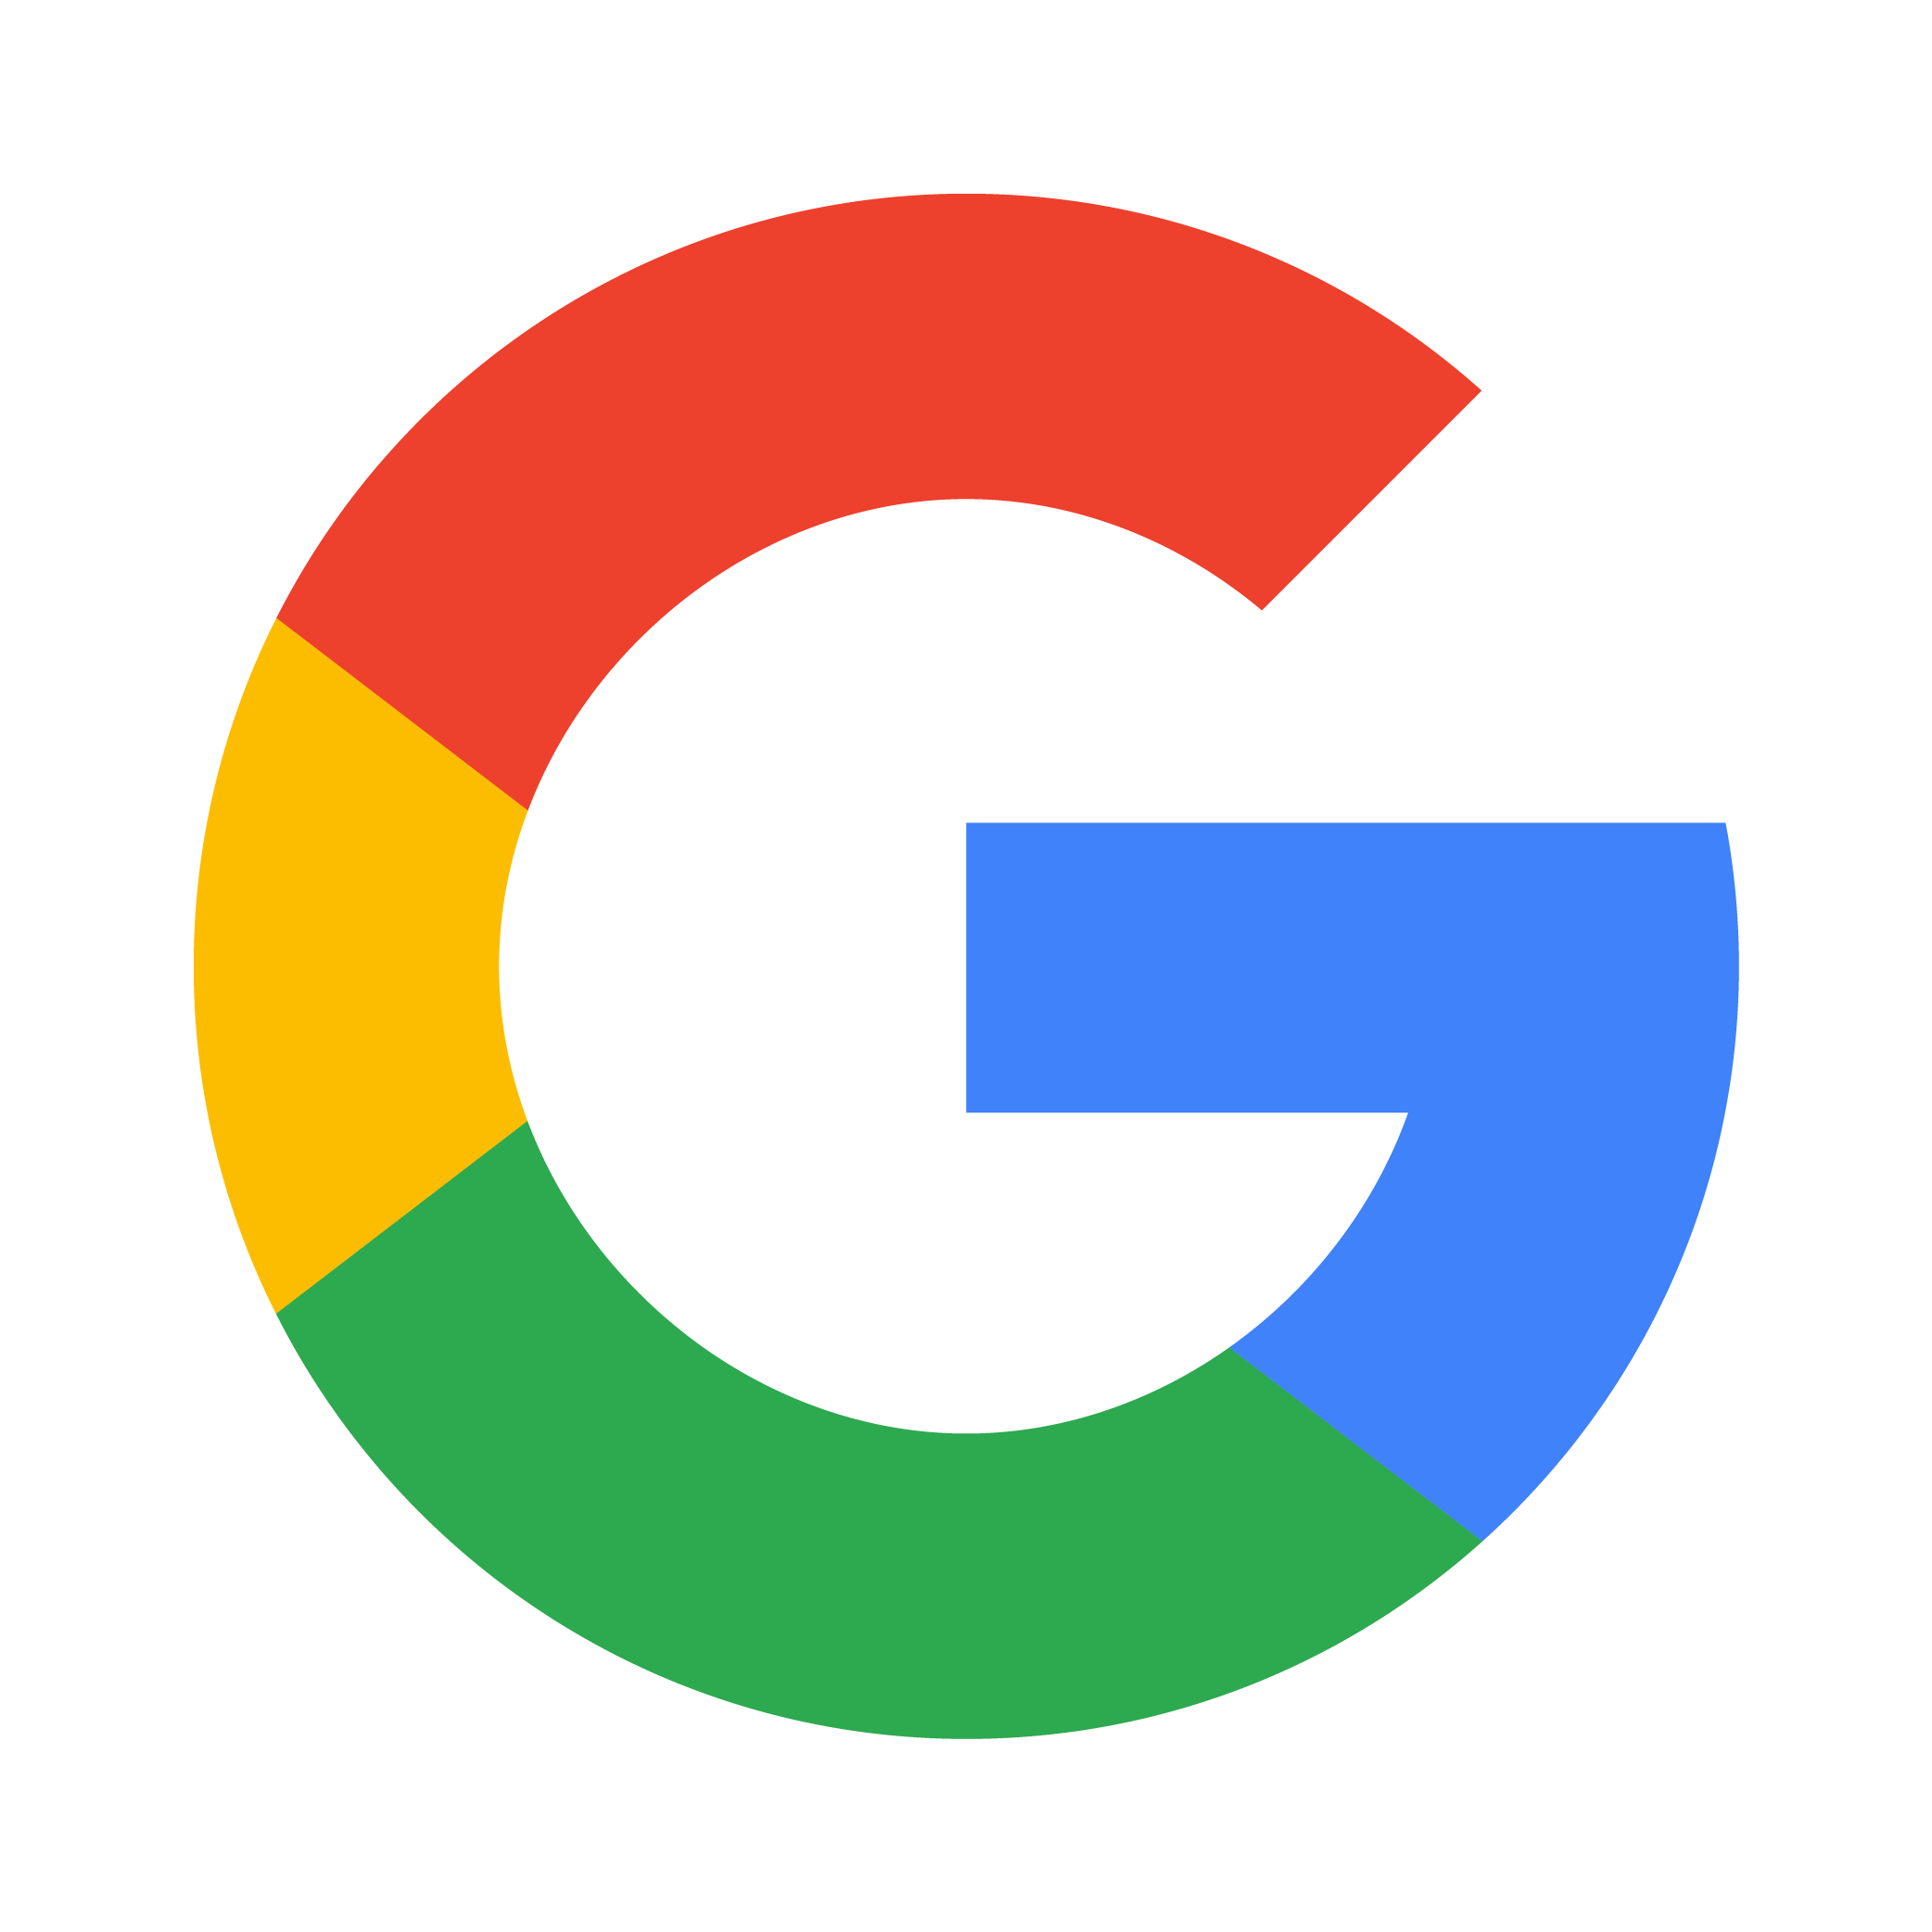 Google Logo PNG File